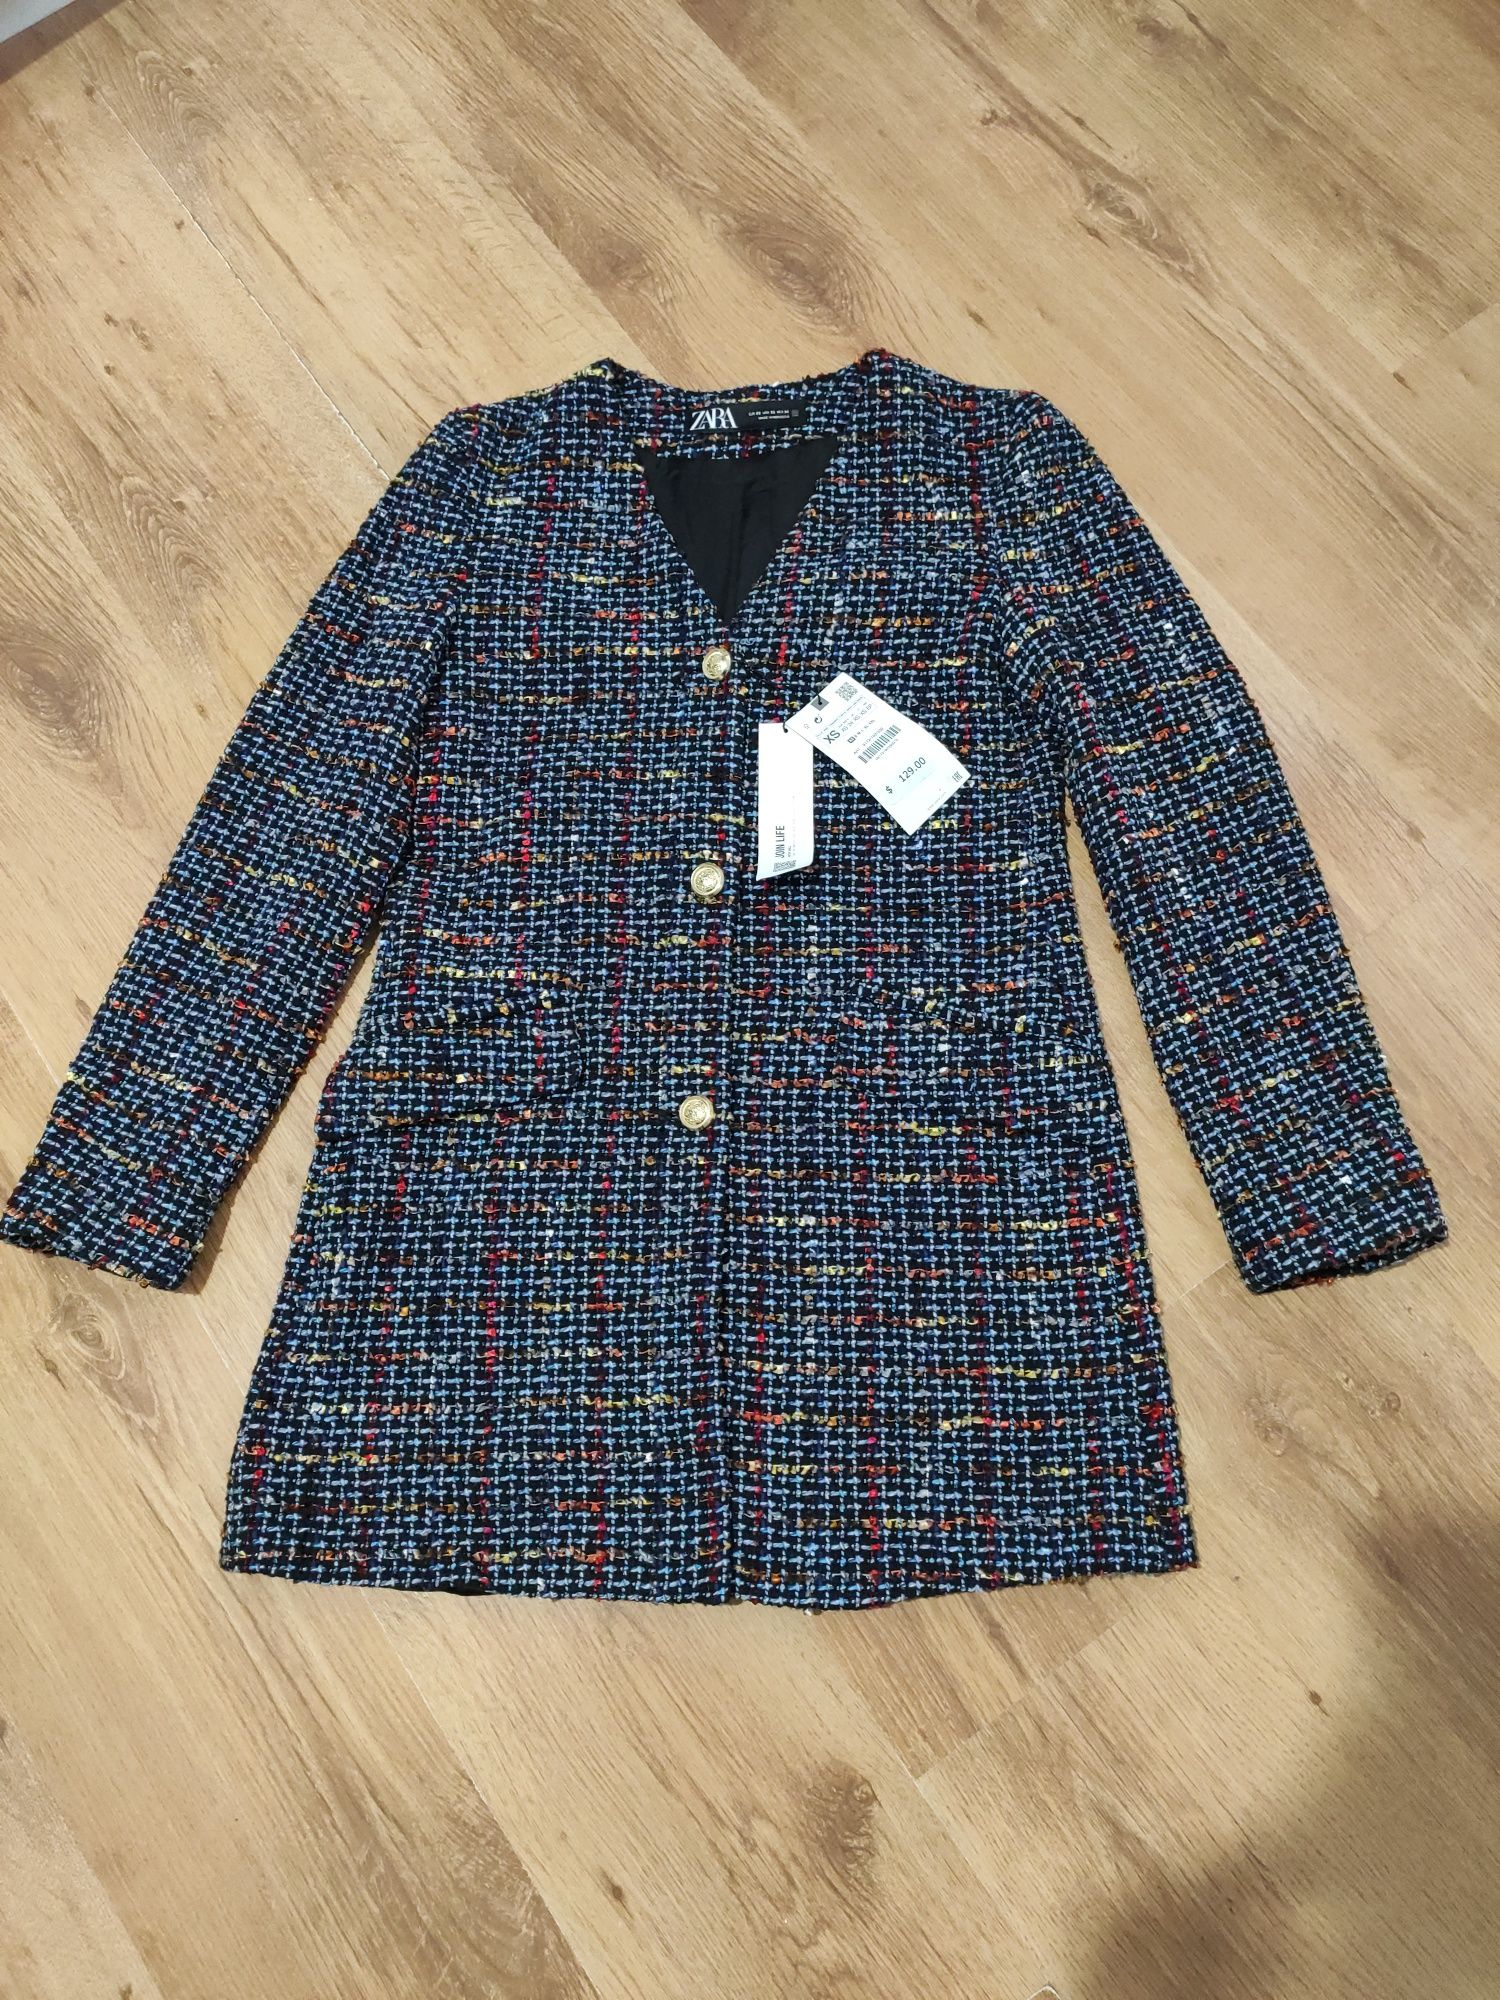 Jachetă / blazer lung de damă Zara mărimea XS